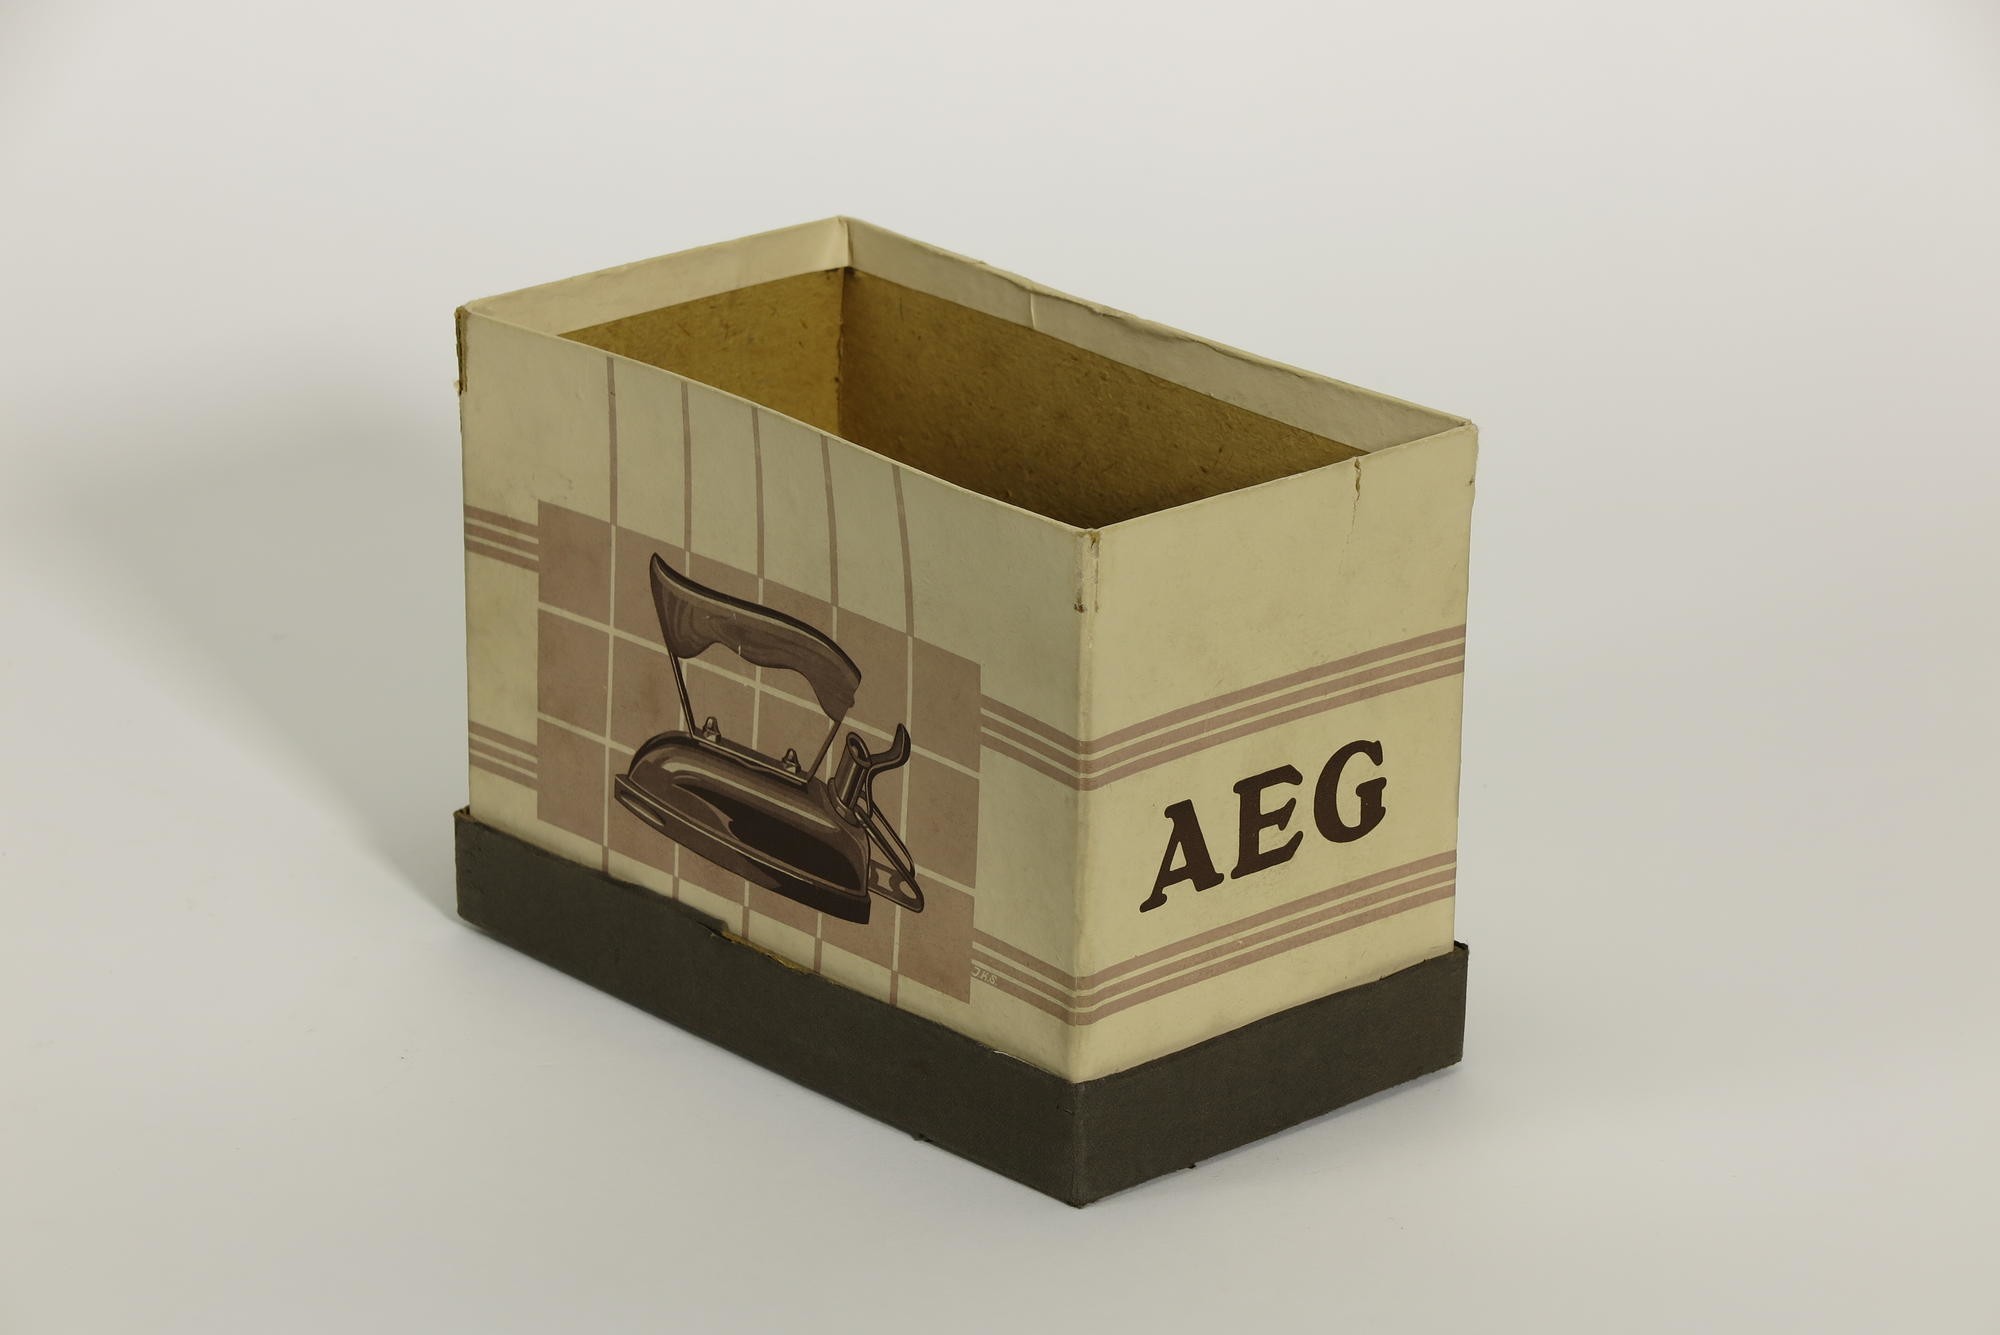 Verpackungskarton, Zubehör zu Elektrisches Haushalt-Bügeleisen AEG (Stiftung Deutsches Technikmuseum Berlin CC0)